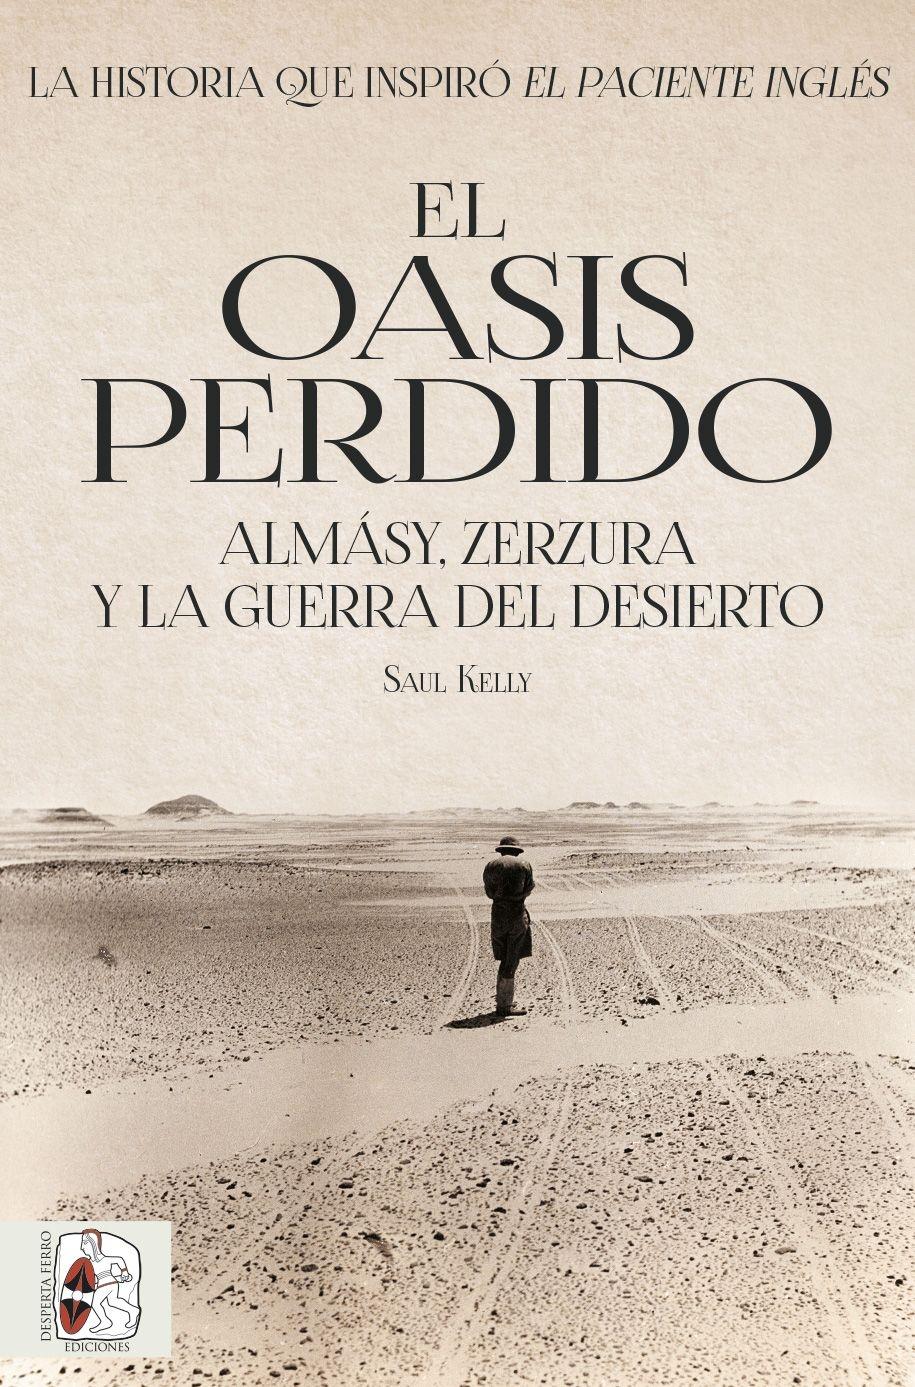 El oasis perdido "Almásy, Zerzura y la guerra del desierto"